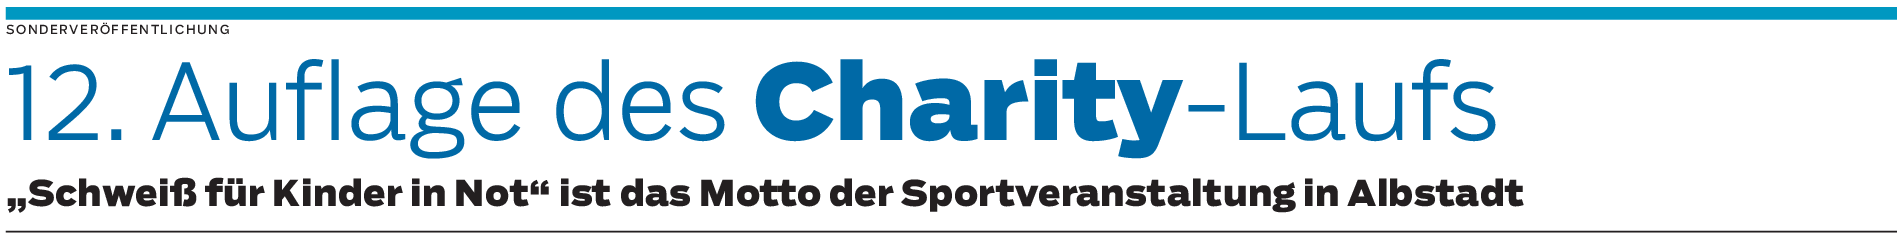 Charity-Lauf in Albstadt: Jede Runde zählt 